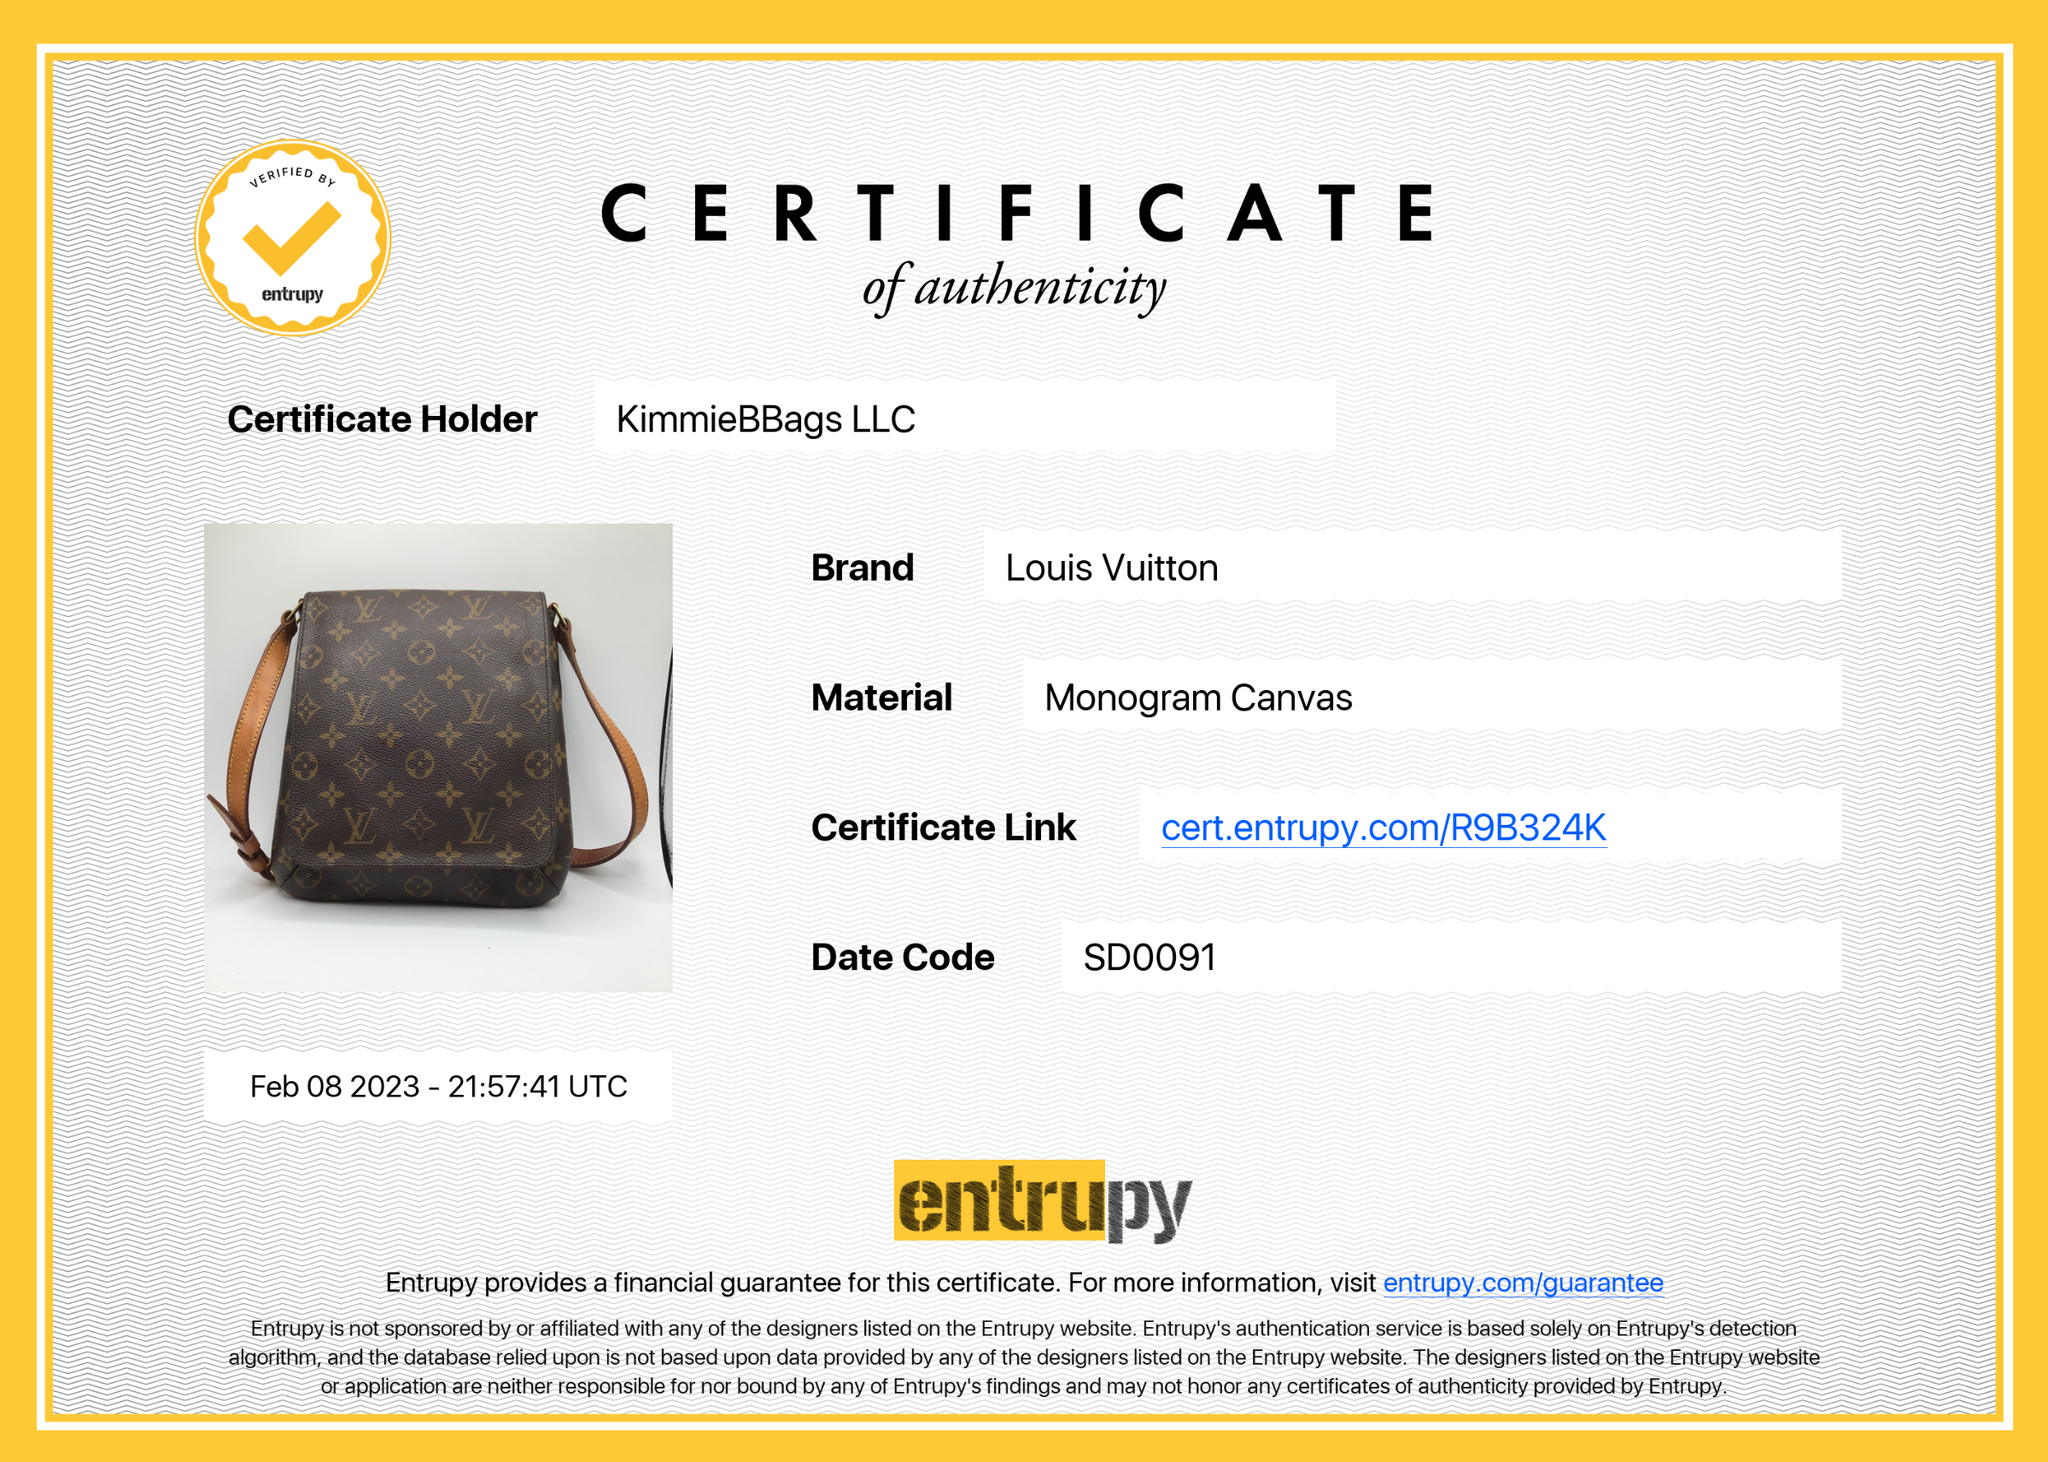 Authenticated used Louis Vuitton Shoulder Bag Musette Brown Monogram M51256 Flap As0040 Louis Vuitton Nume Ladies, Adult Unisex, Size: (HxWxD): 33cm x